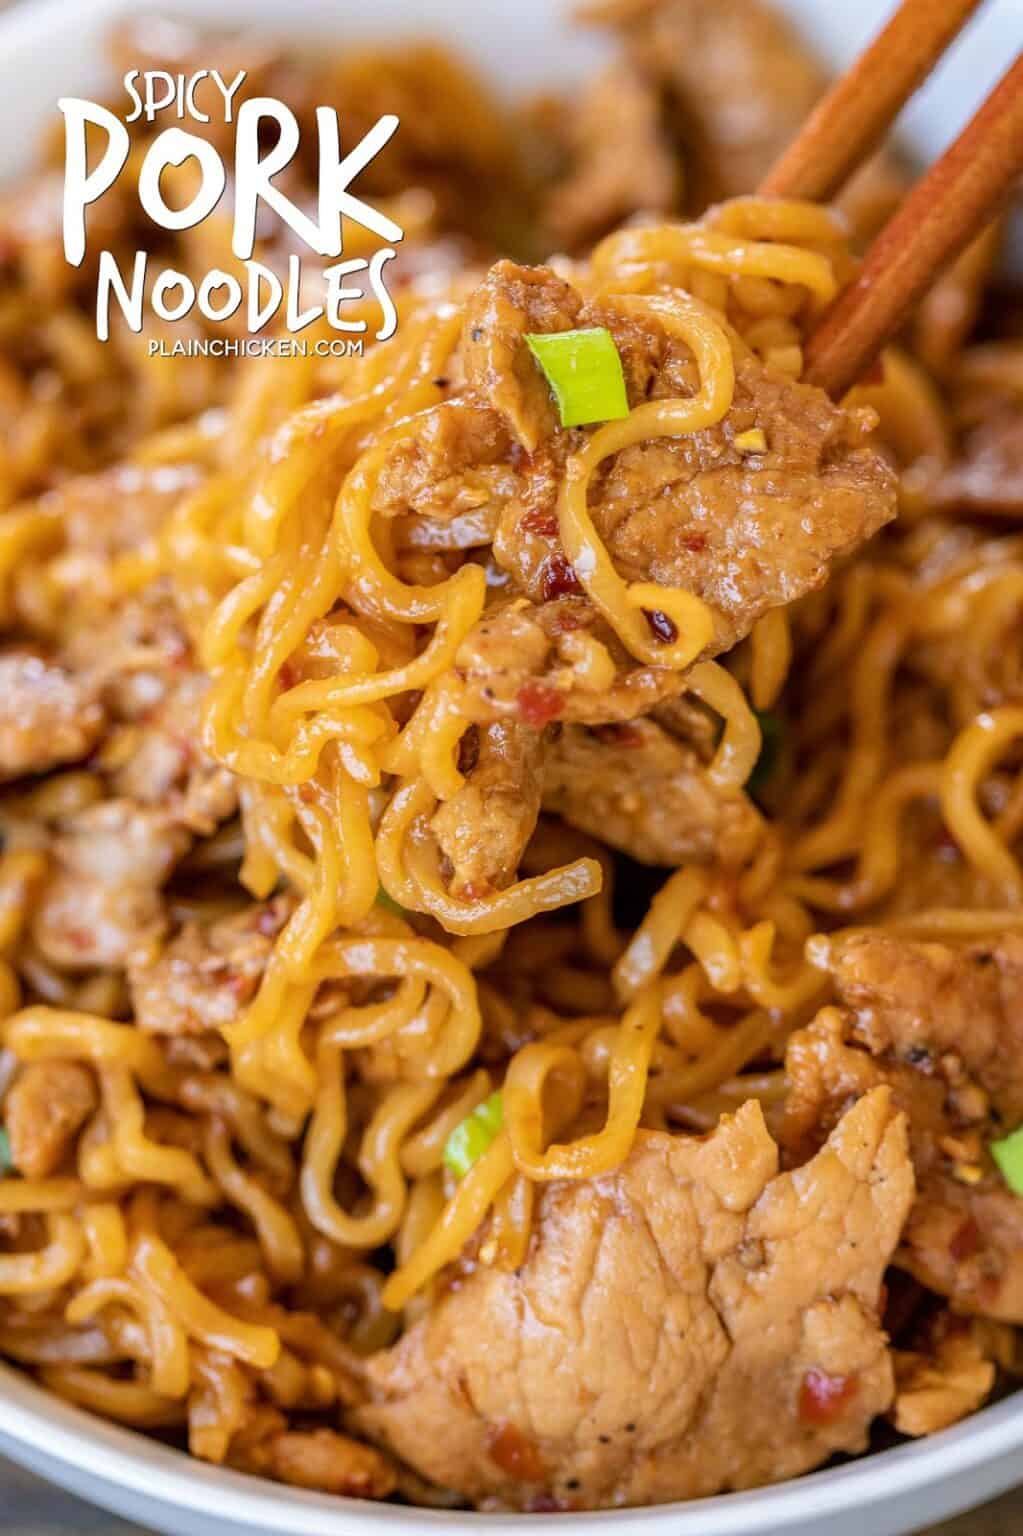 Spicy Pork Noodles - Plain Chicken